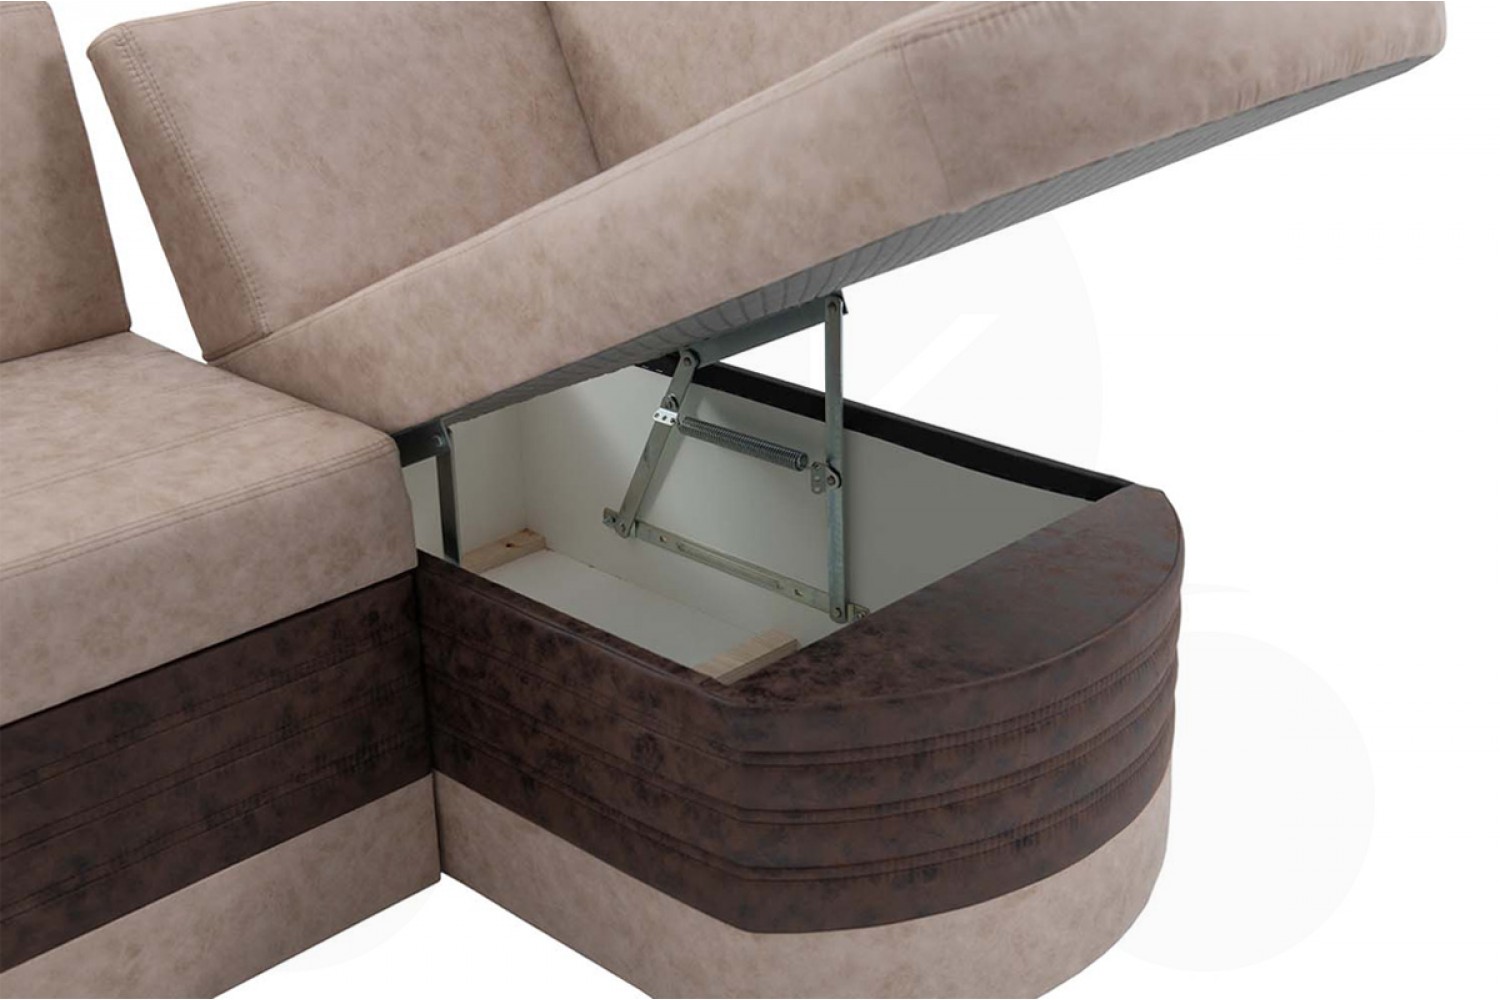 Кухонный угловой диван со спальным местом Чикаго 7к – купить в Москве поцене 35 088 руб. в интернет-магазине мебели Аната-Мебель